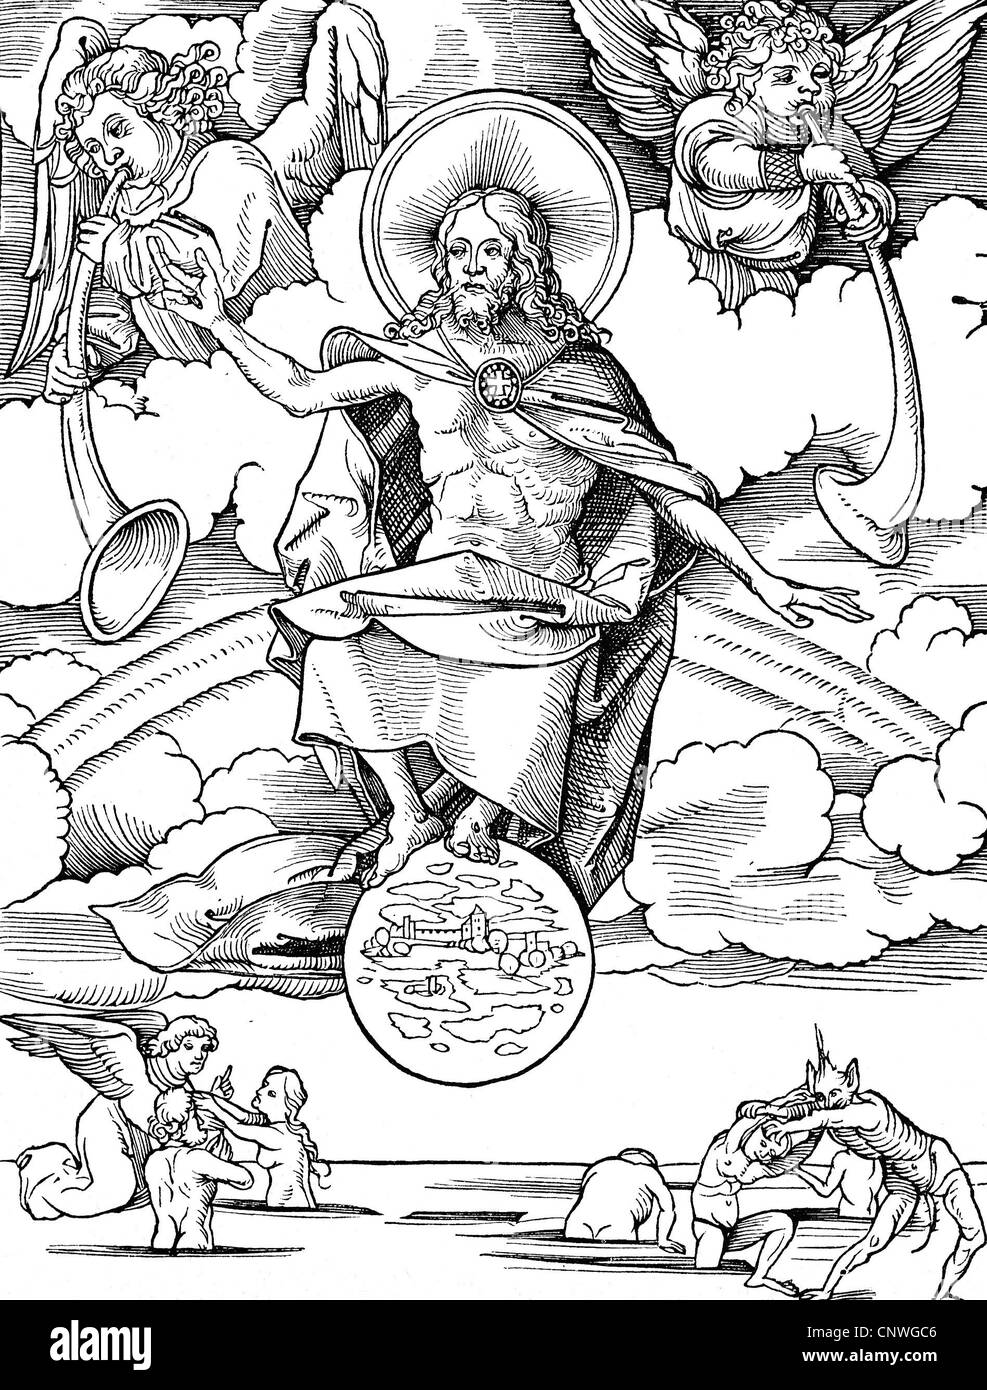 Religion, apocalypse, 'jugement dernier', coupe de bois par Hans Wechtlin (1480/1485 - après 1526), droits additionnels-Clearences-non disponible Banque D'Images